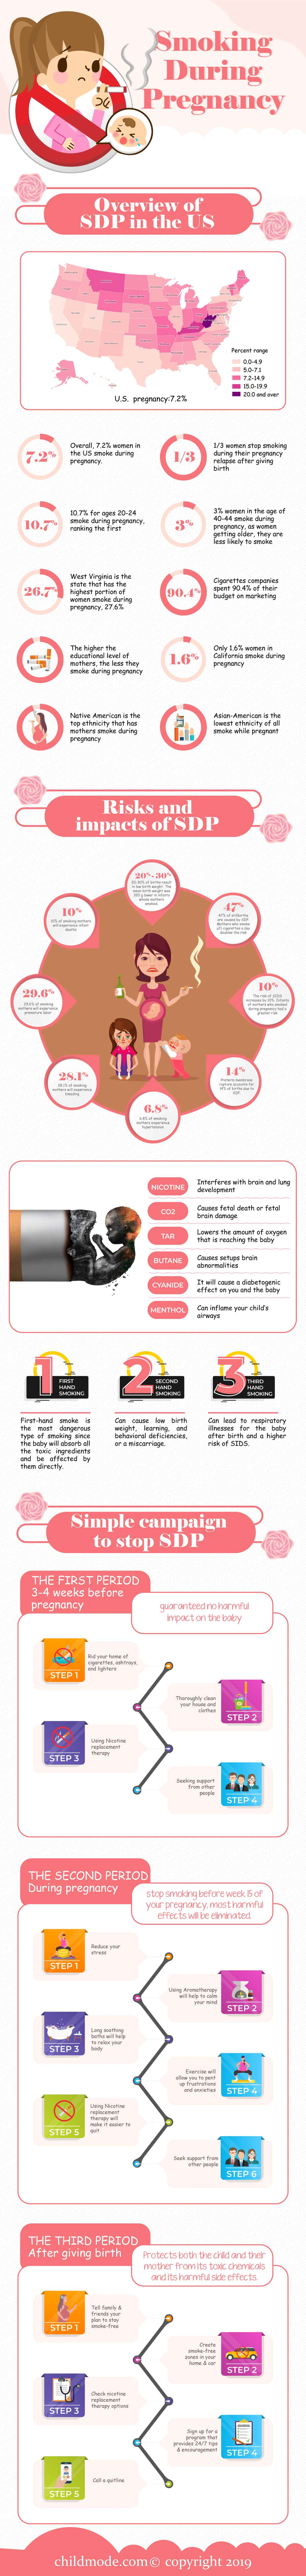 Smoking-During-prengnancy-2